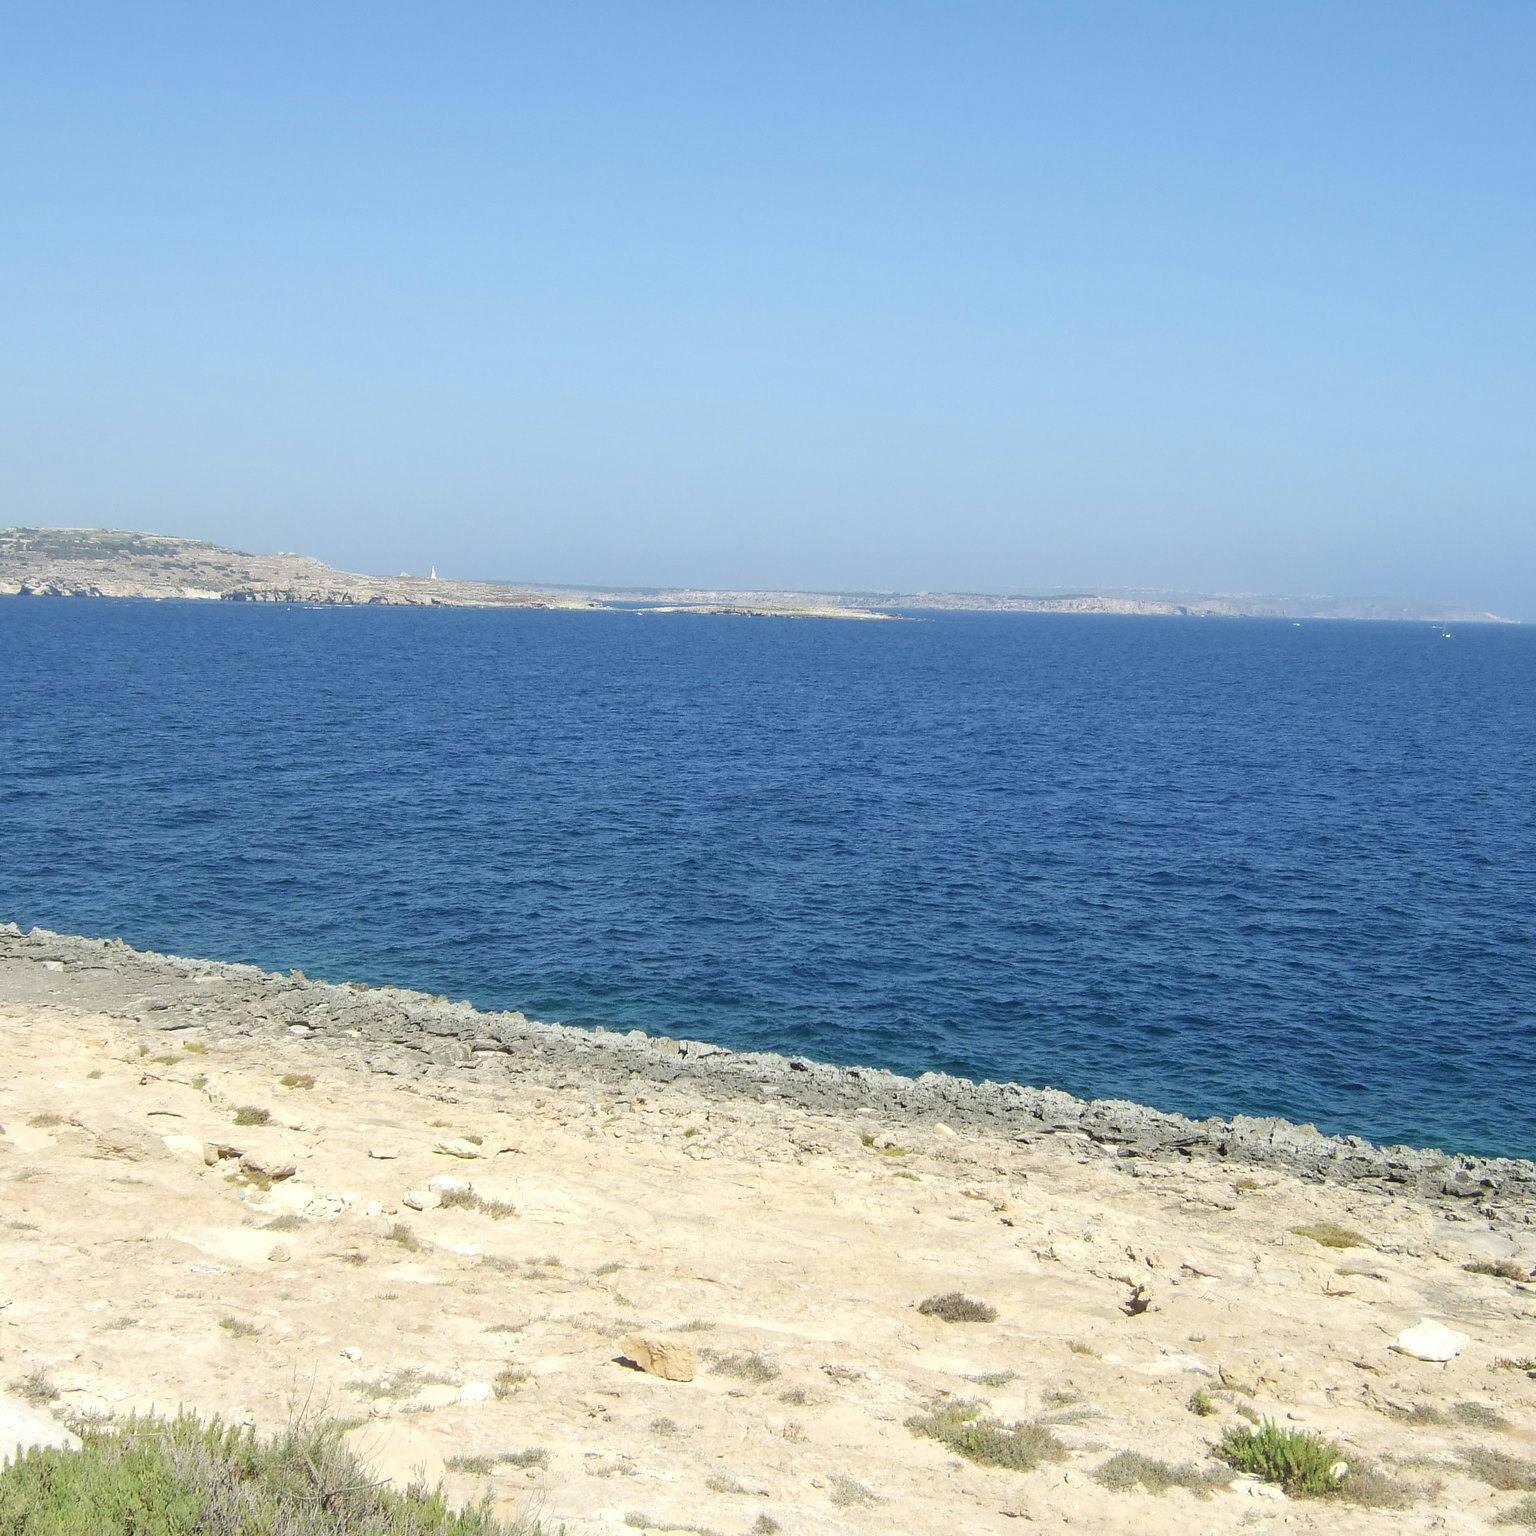 Olietanker zinkt voor Tunesische kust